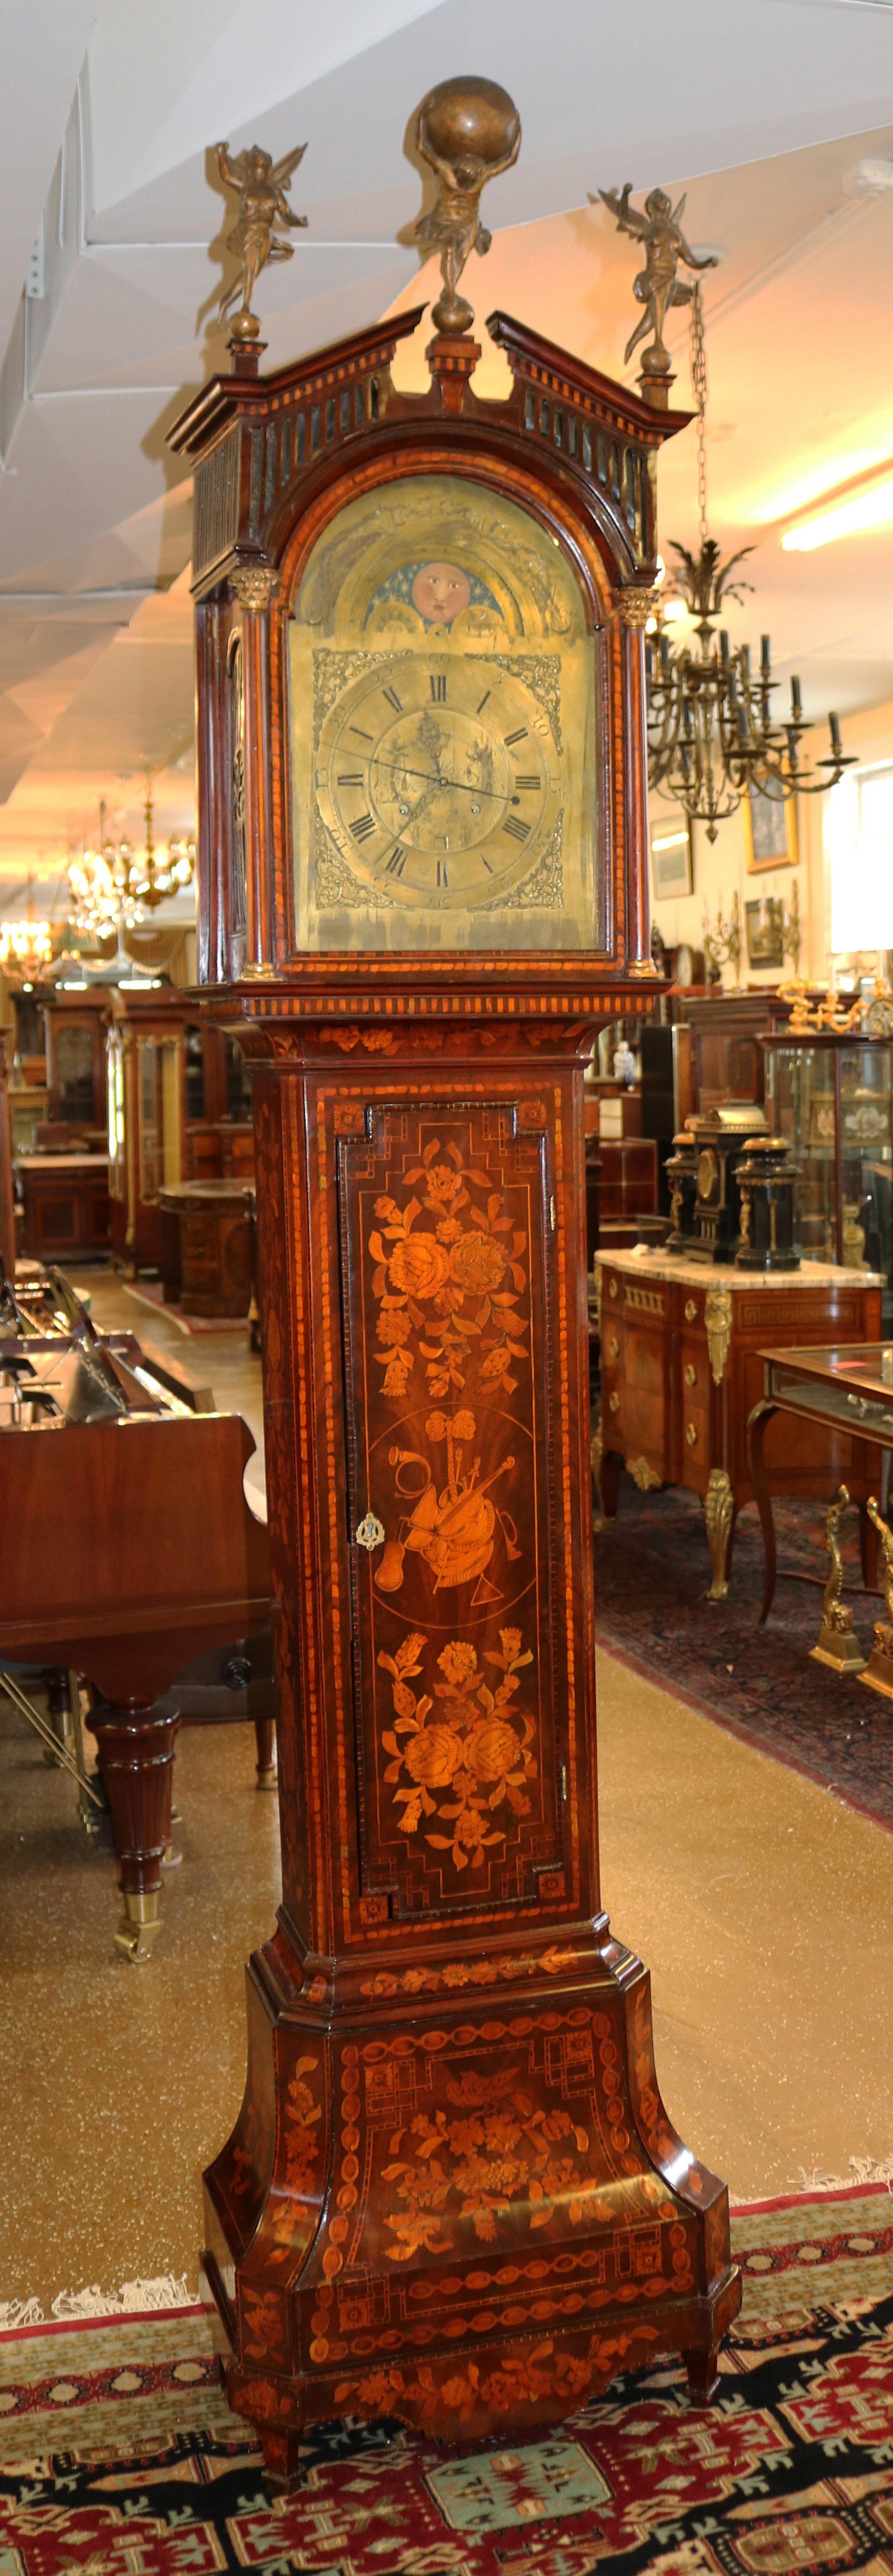 Cette étonnante horloge à boîtier haut a été fabriquée aux Pays-Bas à la fin du XVIIIe siècle. L'étui est magnifiquement incrusté et le sommet de la hotte est orné de deux anges de chaque côté et d'une sculpture d'atlas au milieu. Le mouvement est